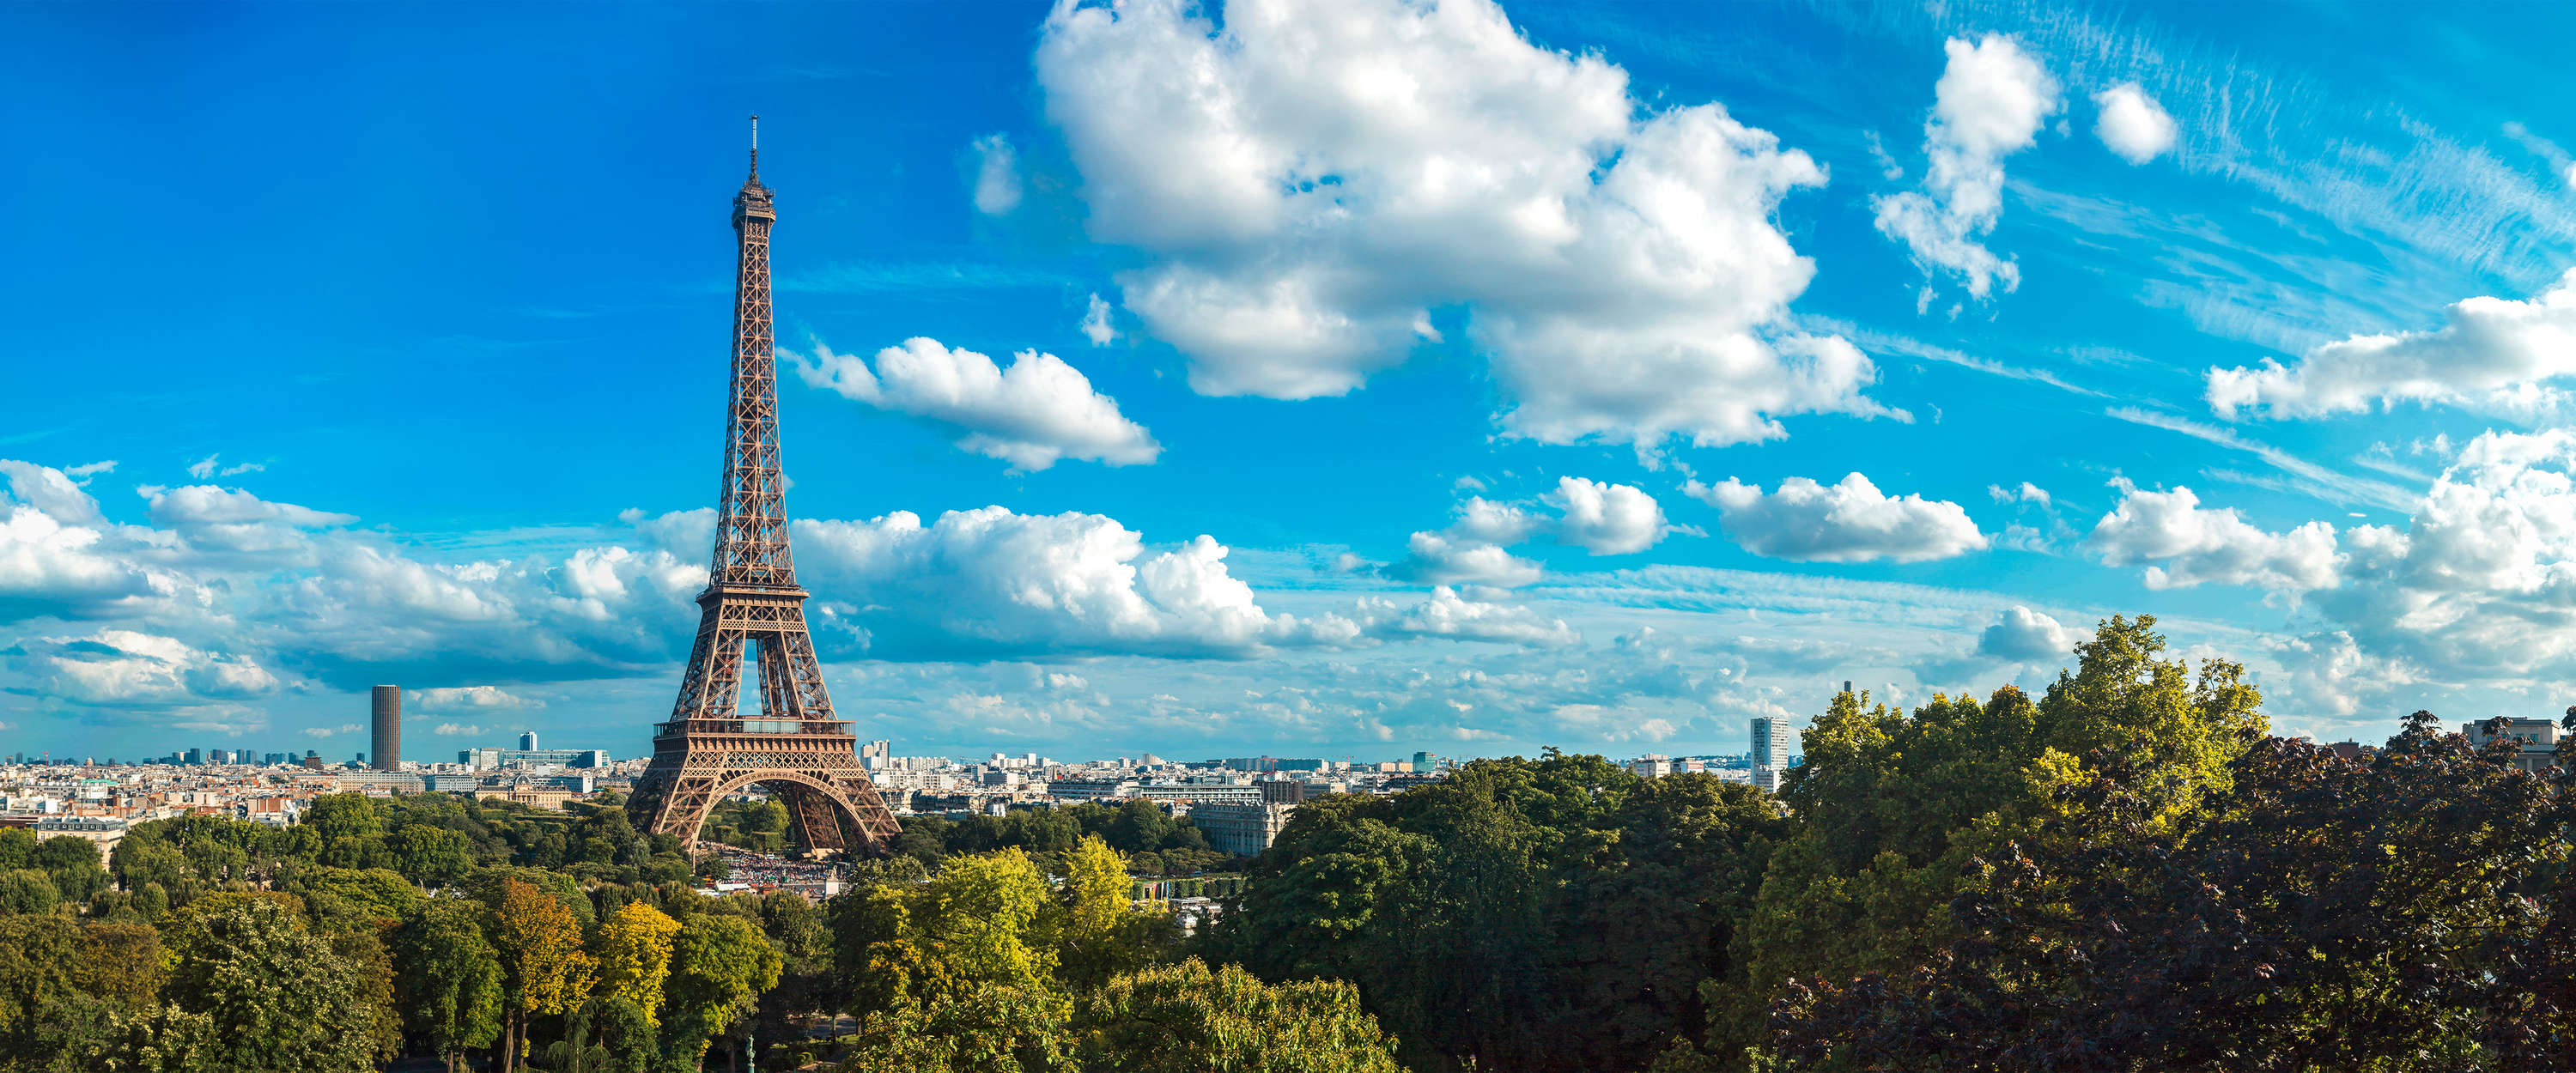             Papier peint Tour Eiffel & Skyline de Paris
        